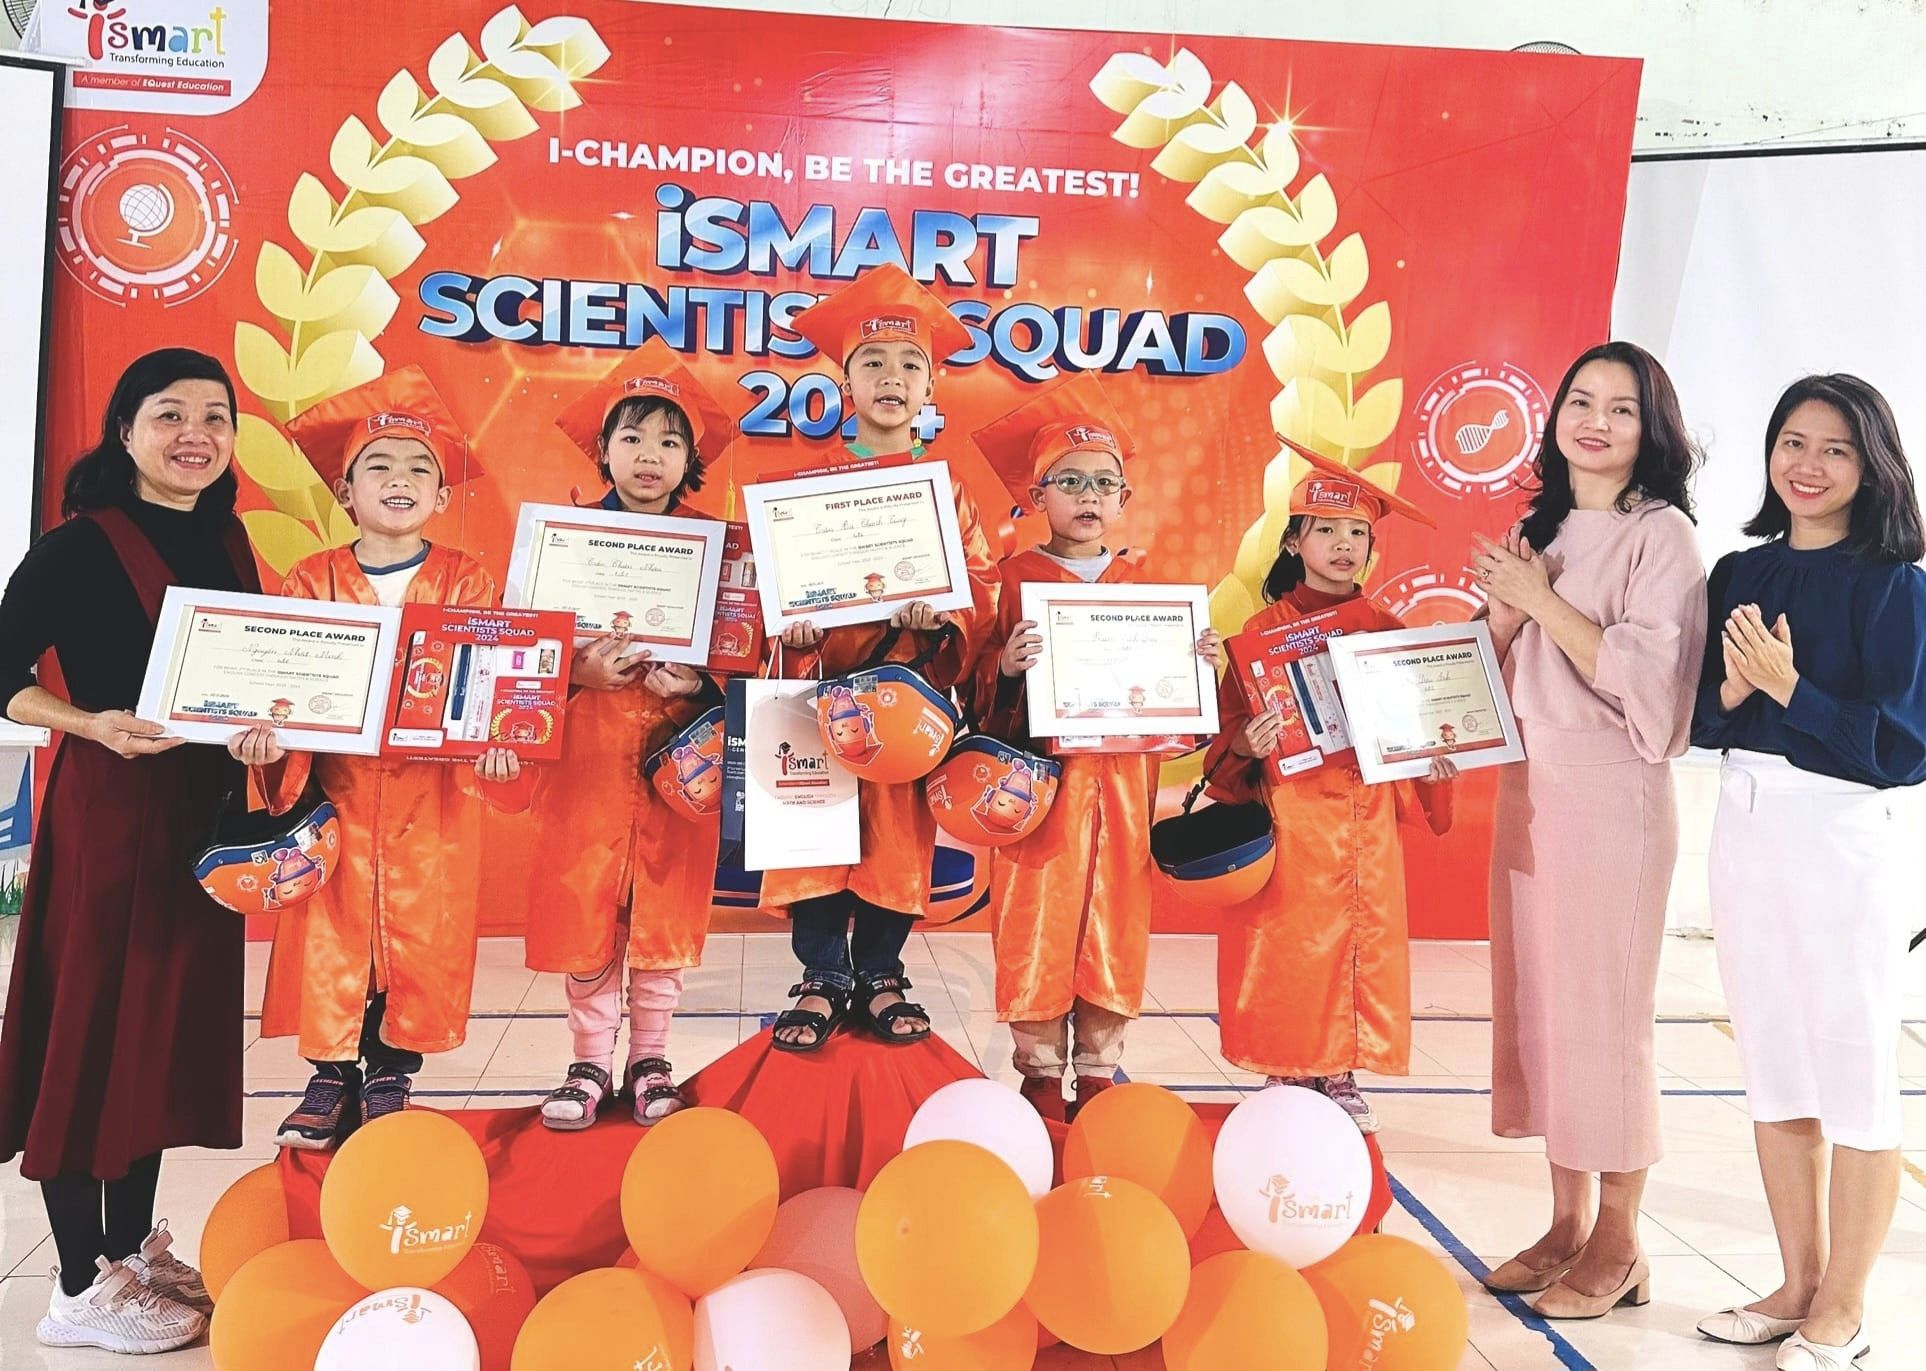 Ismarters trường Tiểu học Vân Canh tranh tài - giải đấu Scientists Squad 2024